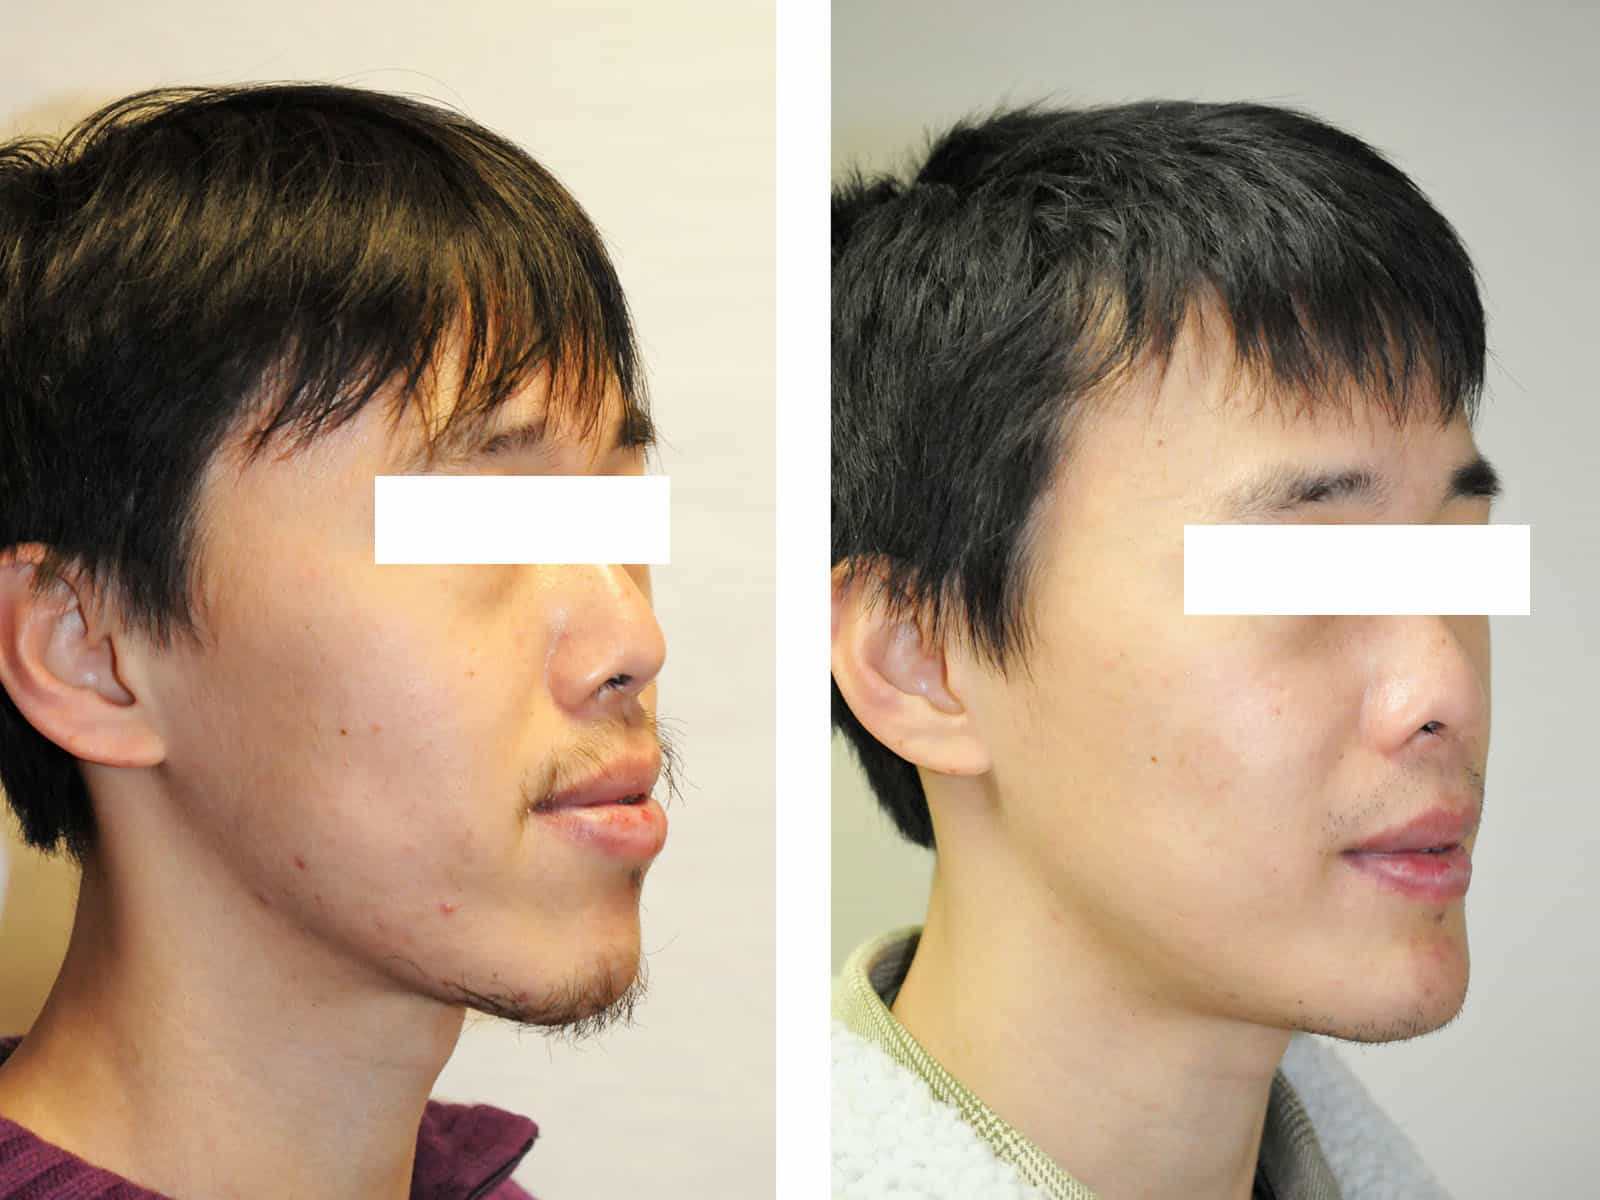 classe III distraction disjonction maxillaire lefort 1 classe III recentrage avant après chirurgie maxillo facial paris génioplastie dr loncle